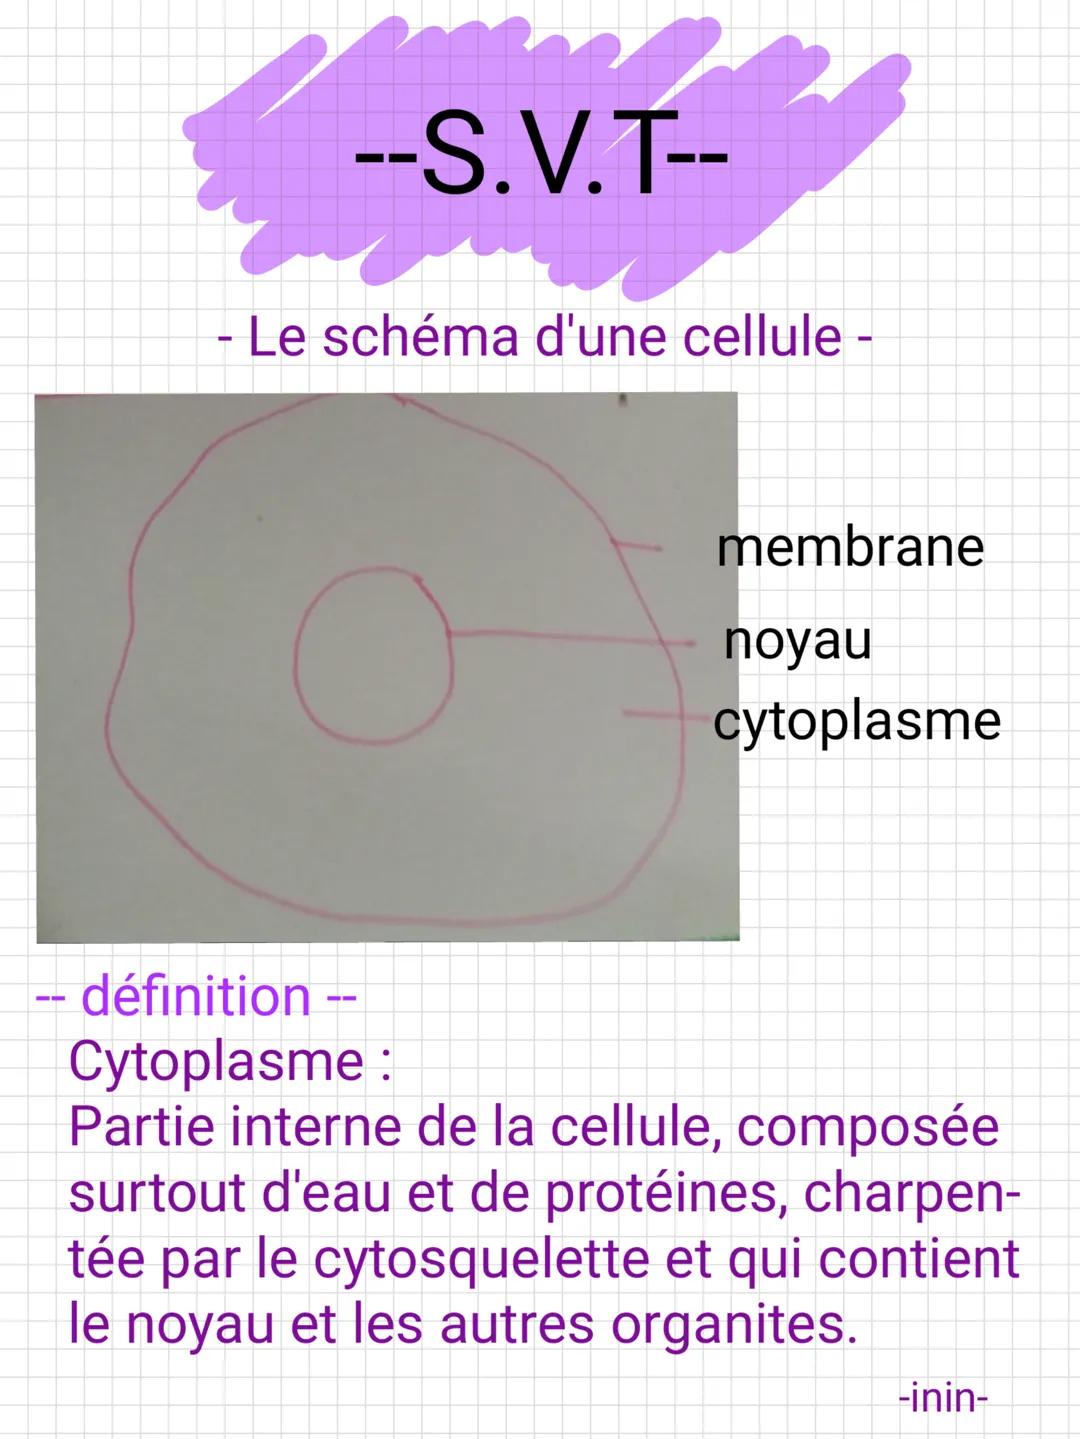 --S.V.T--
- Le schéma d'une cellule -
-- définition --
Cytoplasme :
membrane
noyau
cytoplasme
Partie interne de la cellule, composée
surtout